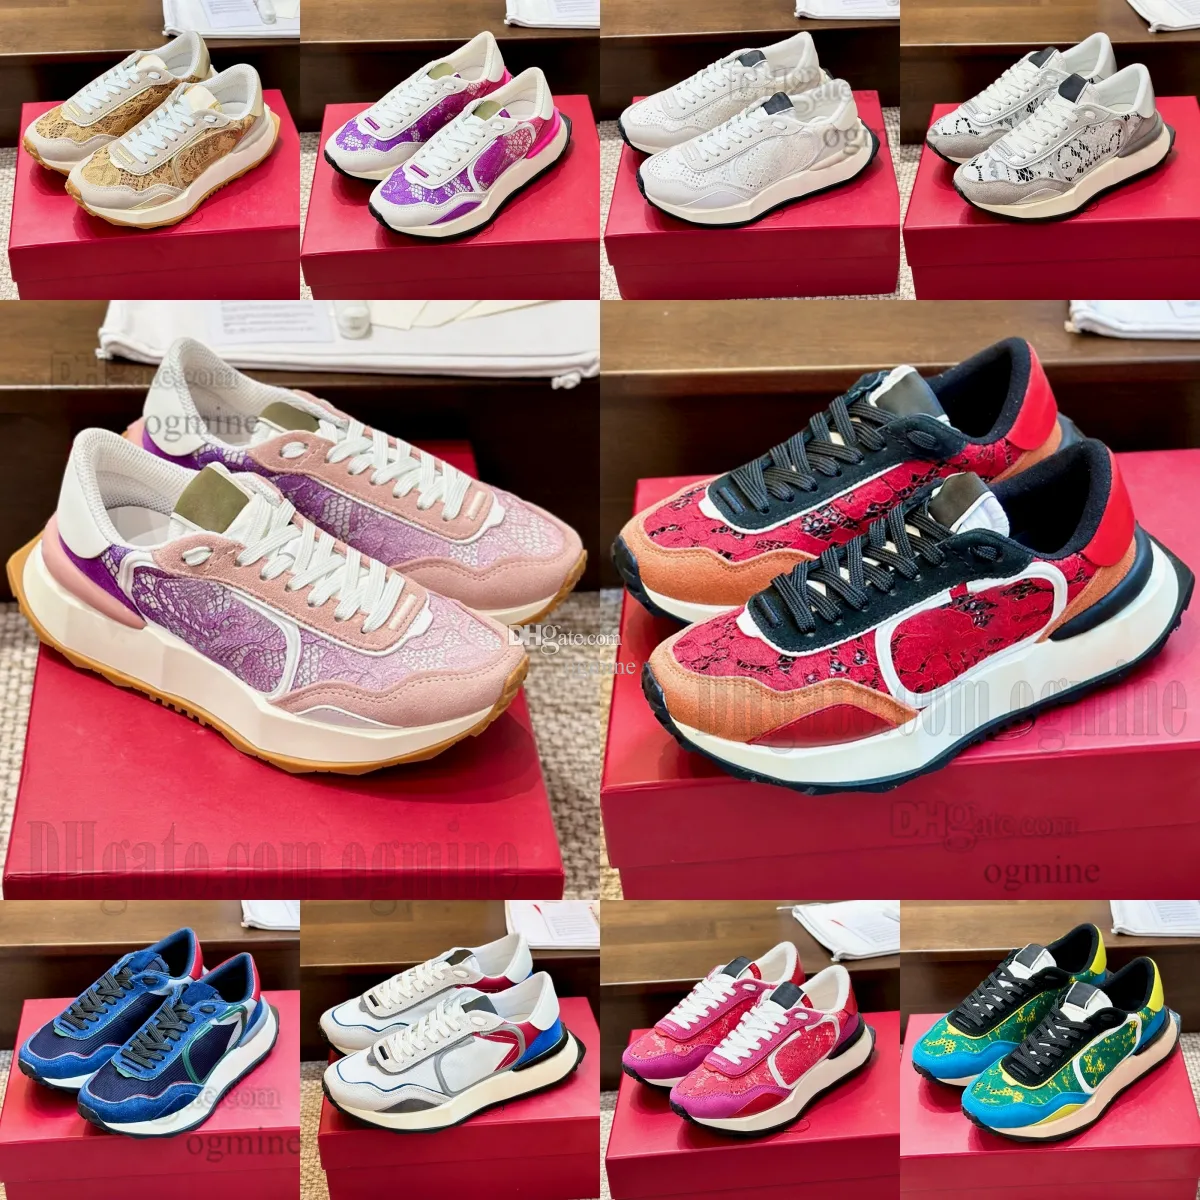 رجالي منخفضة النسائية أحذية رياضية مقسمة من جلد العجل العجل Lwather Lacerunner Runner Mesth Lace Mesh Split Dlogu Pace Shoes Garavani Shoes 36-45